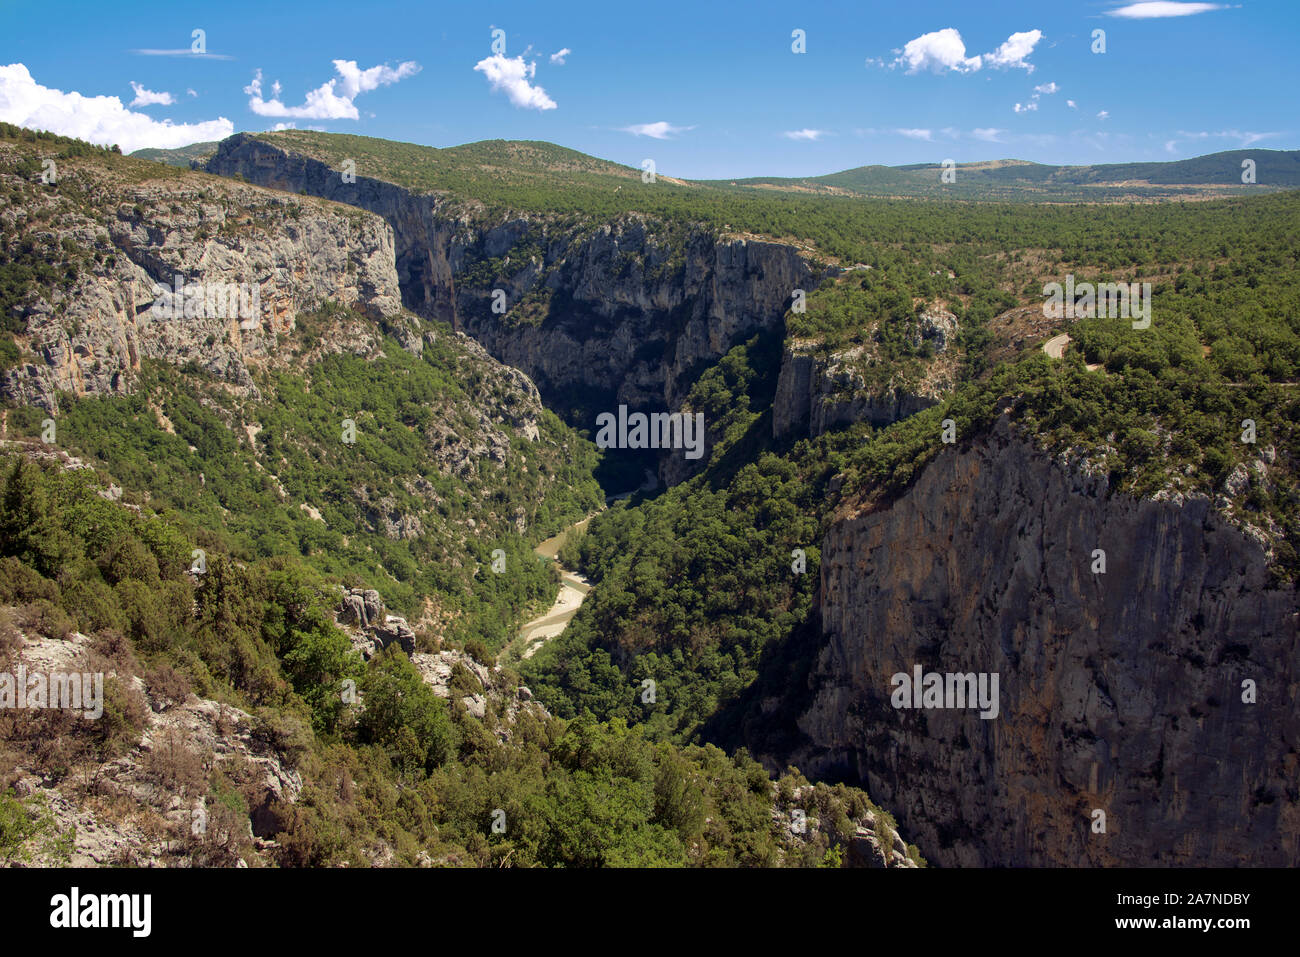 Enge Schlucht Grand Canyon Verdon ab Route Des Cretes Alpes de Haute Provence Frankreich gesehen Stockfoto